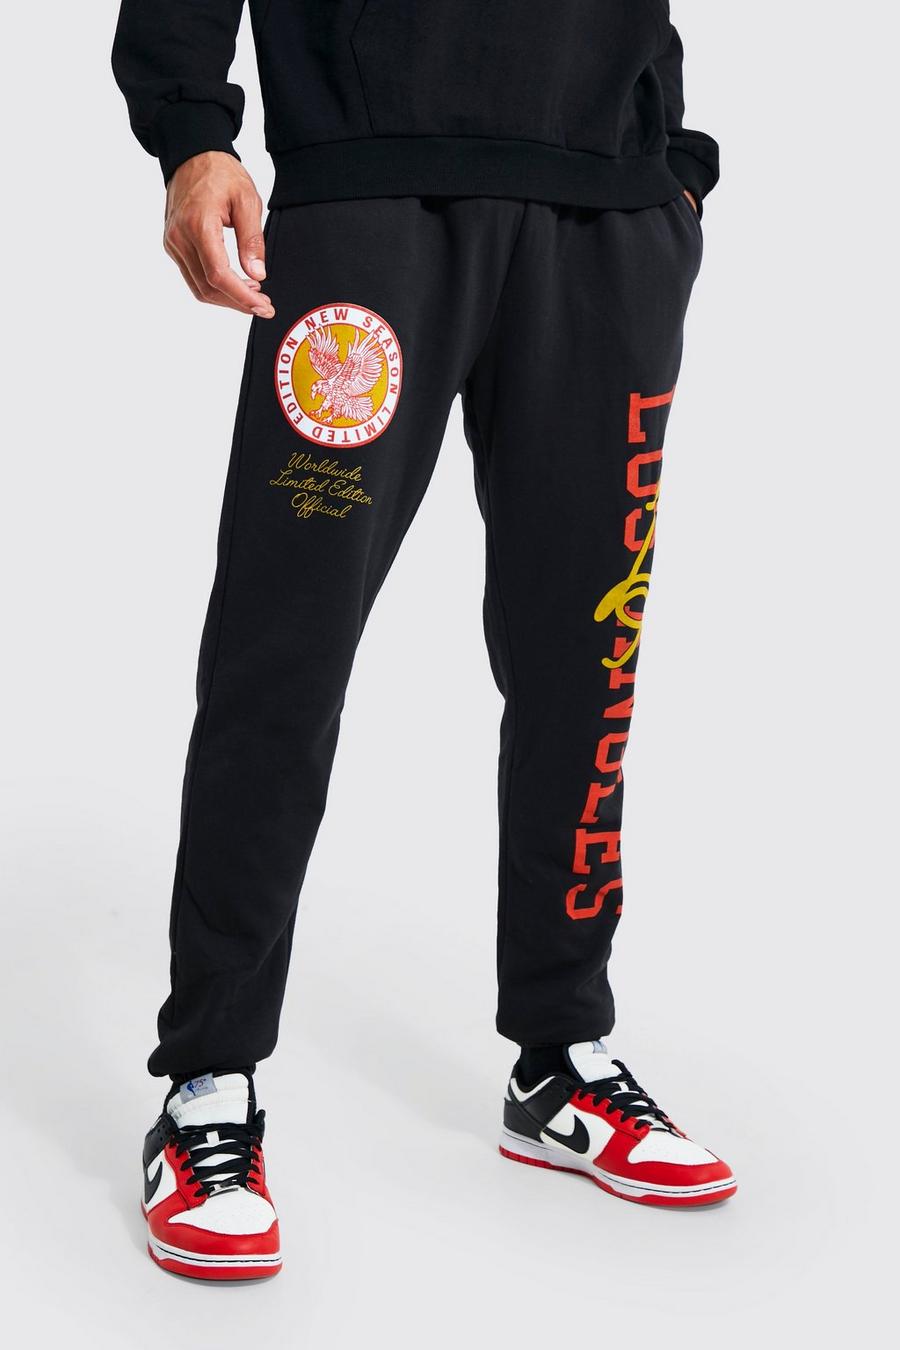 Pantalón deportivo Tall con estampado gráfico universitario de Los Angeles, Black nero image number 1